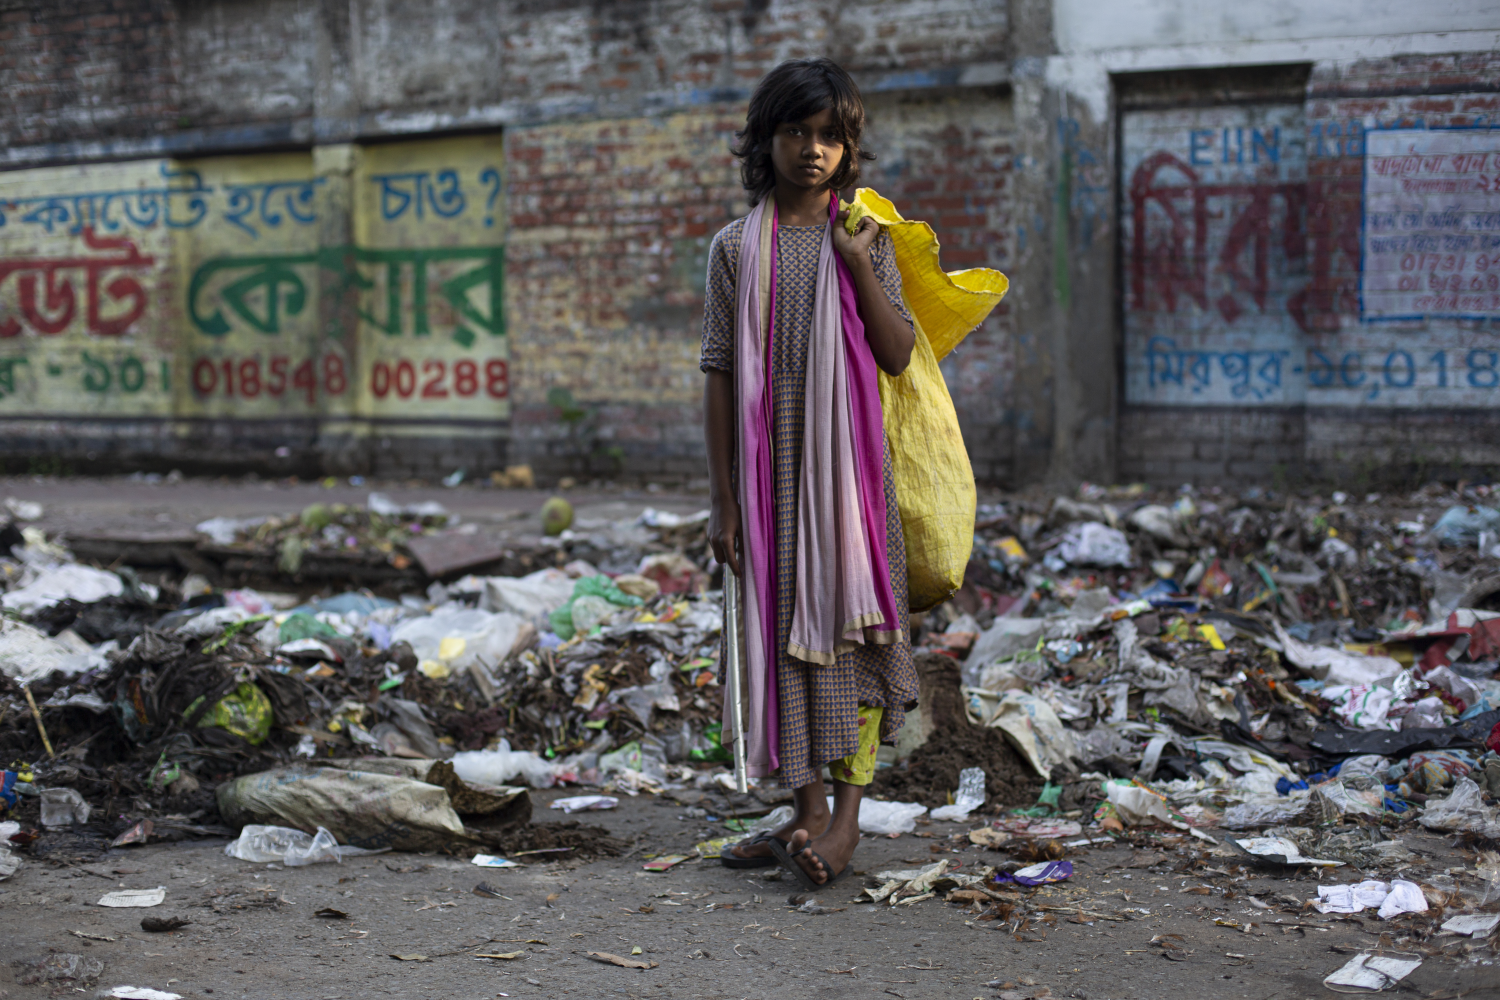 Boishakhi, Straßenmädchen aus Dhaka, sammelt Müll, um zu überleben.